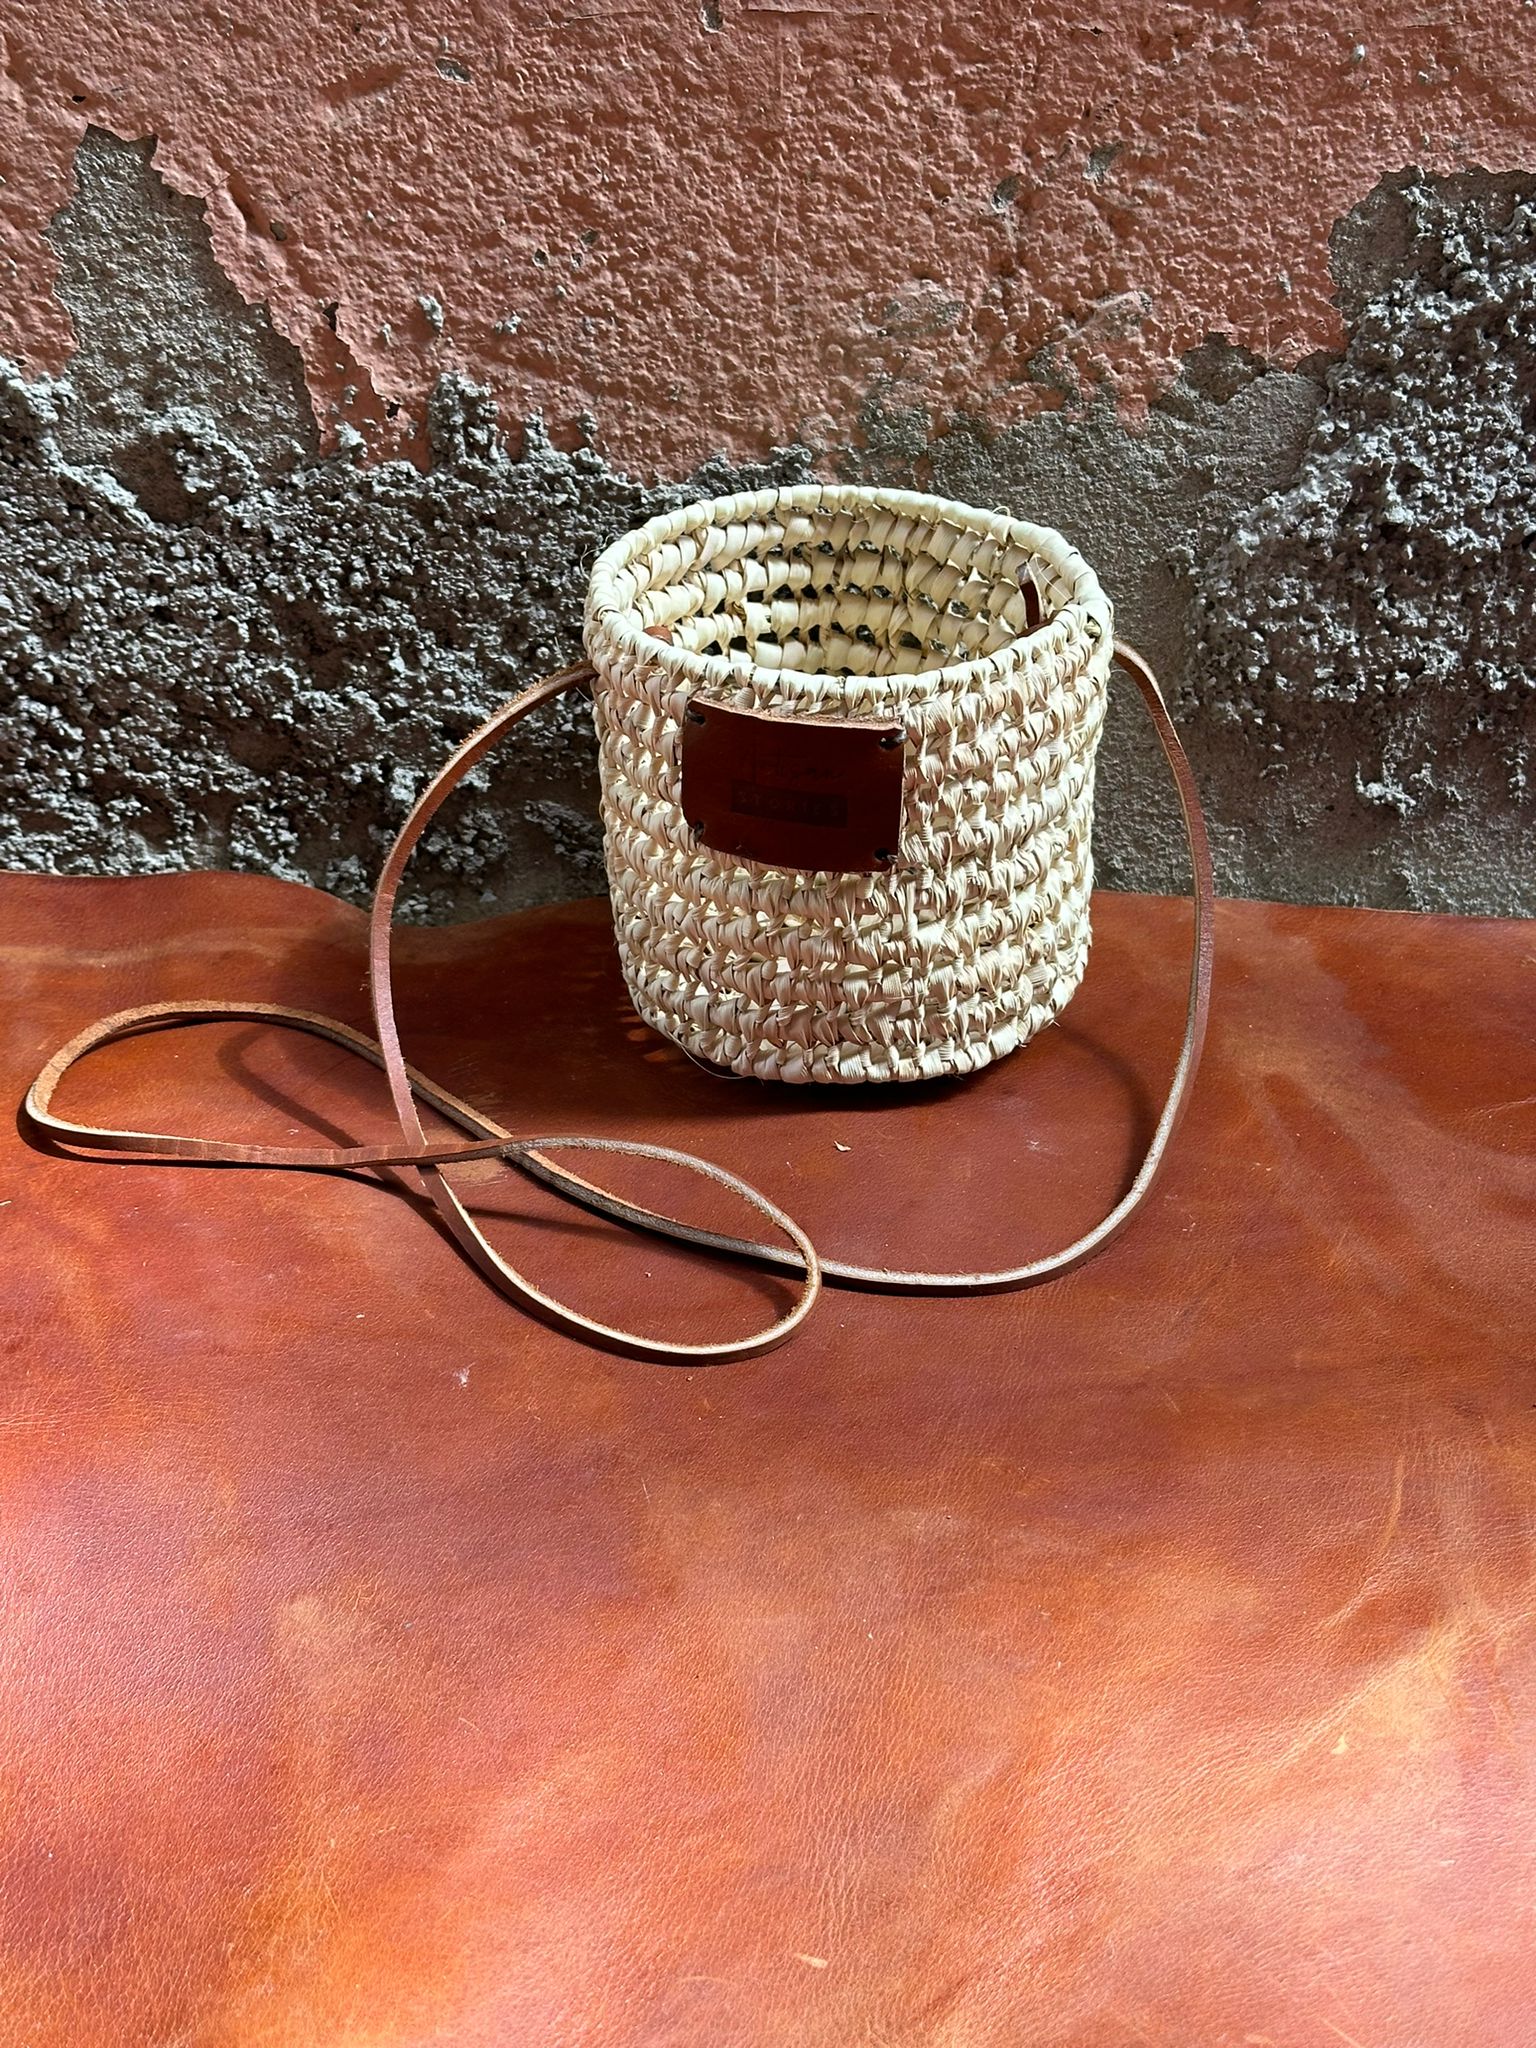 Palm Leaf Open Weave Round Storage Basket